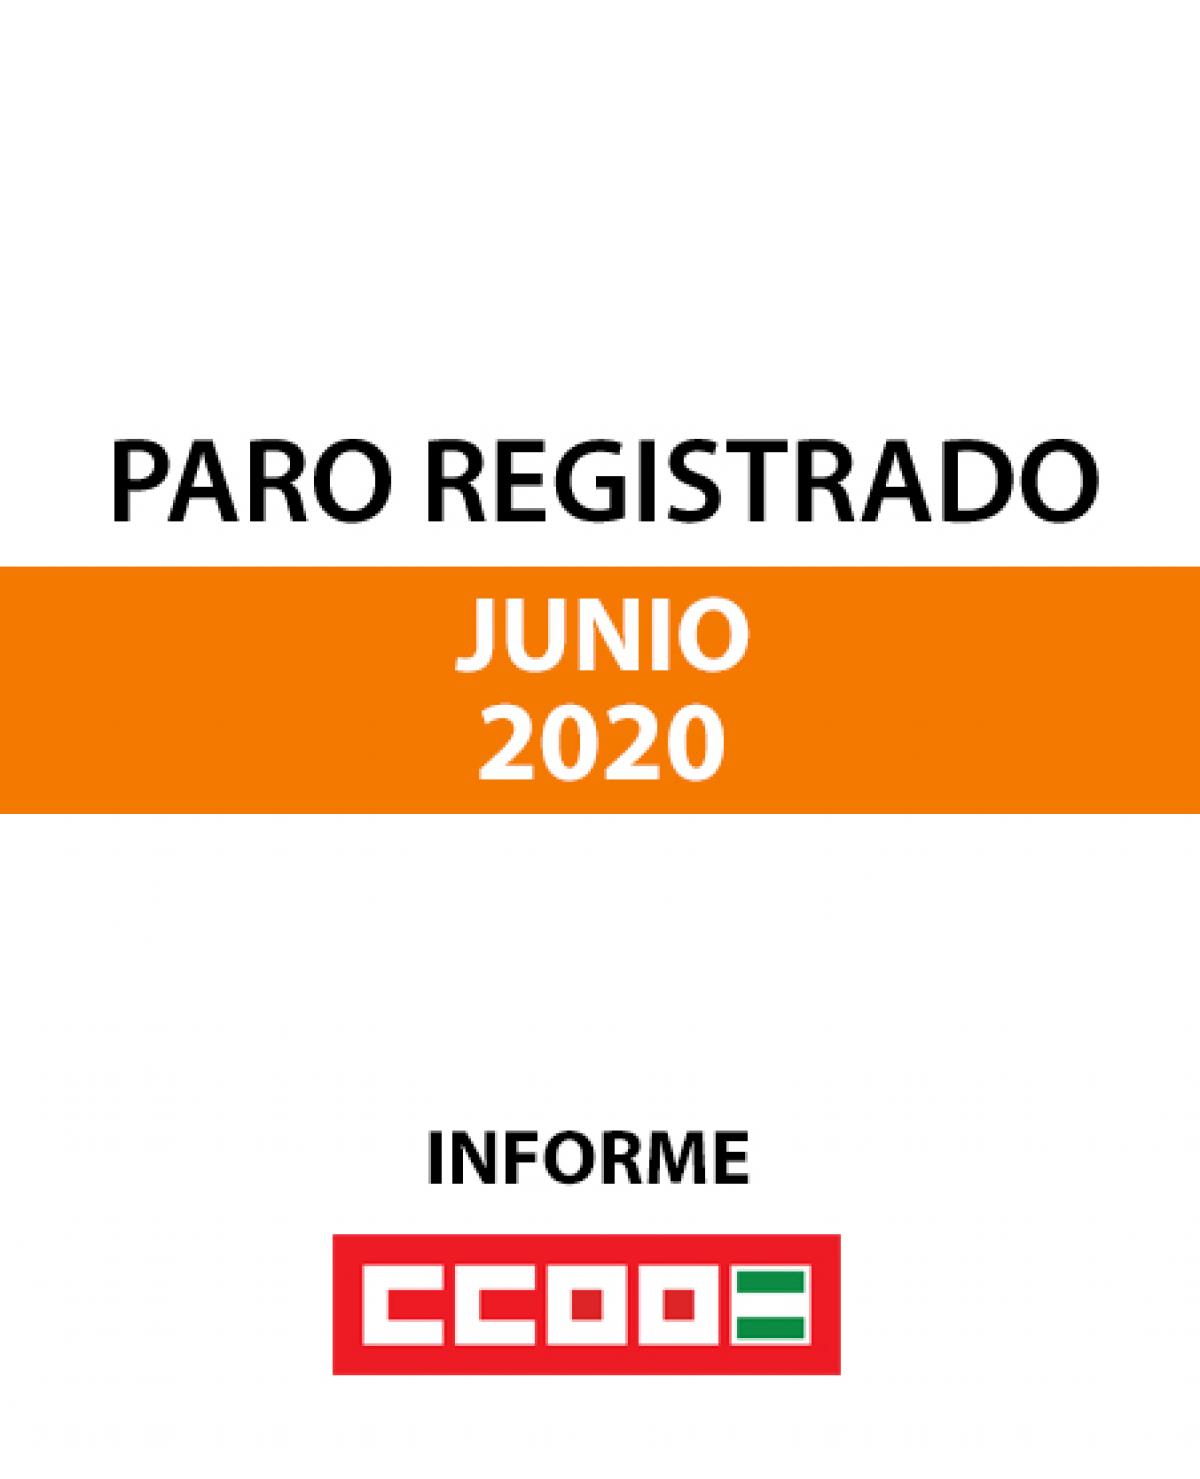 Paro Registrado junio 2020